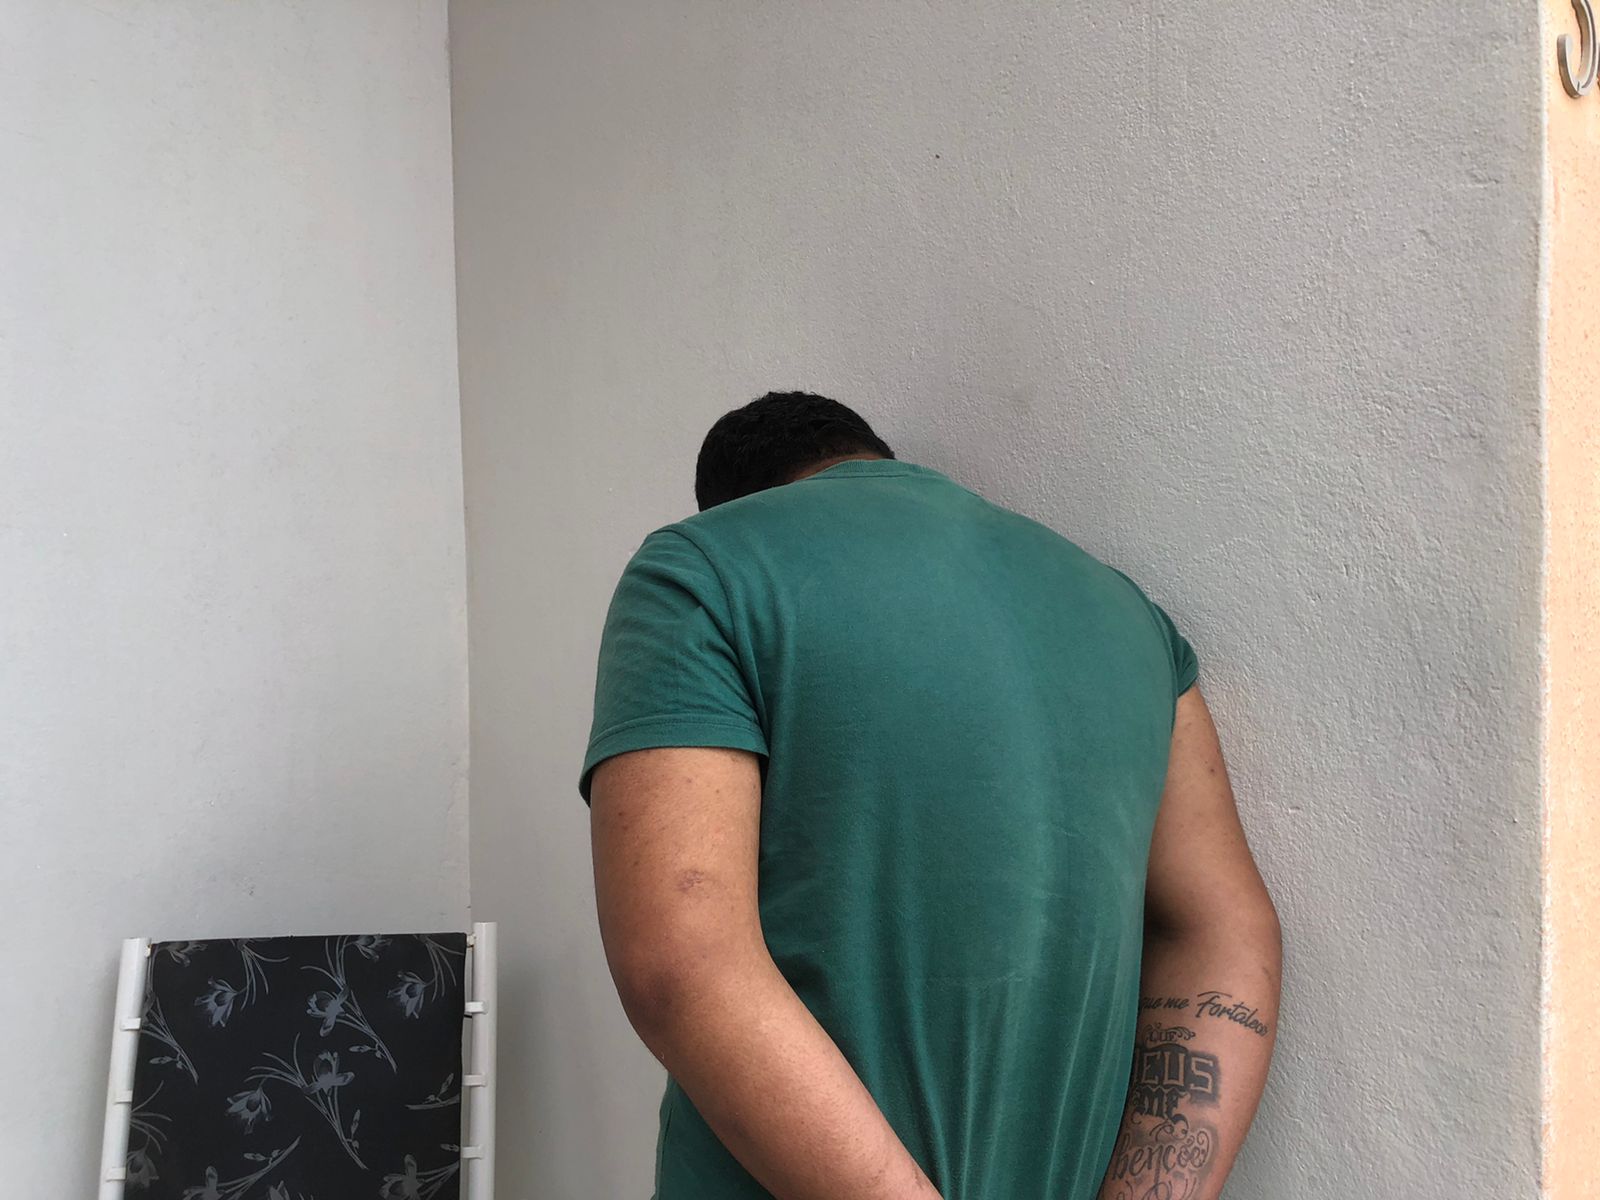 Suspeito de tráfico de drogas foi preso em casa que servia como ponto de distribuição de entorpecentes - Foto: Matheus Oliveira/Meio Norte